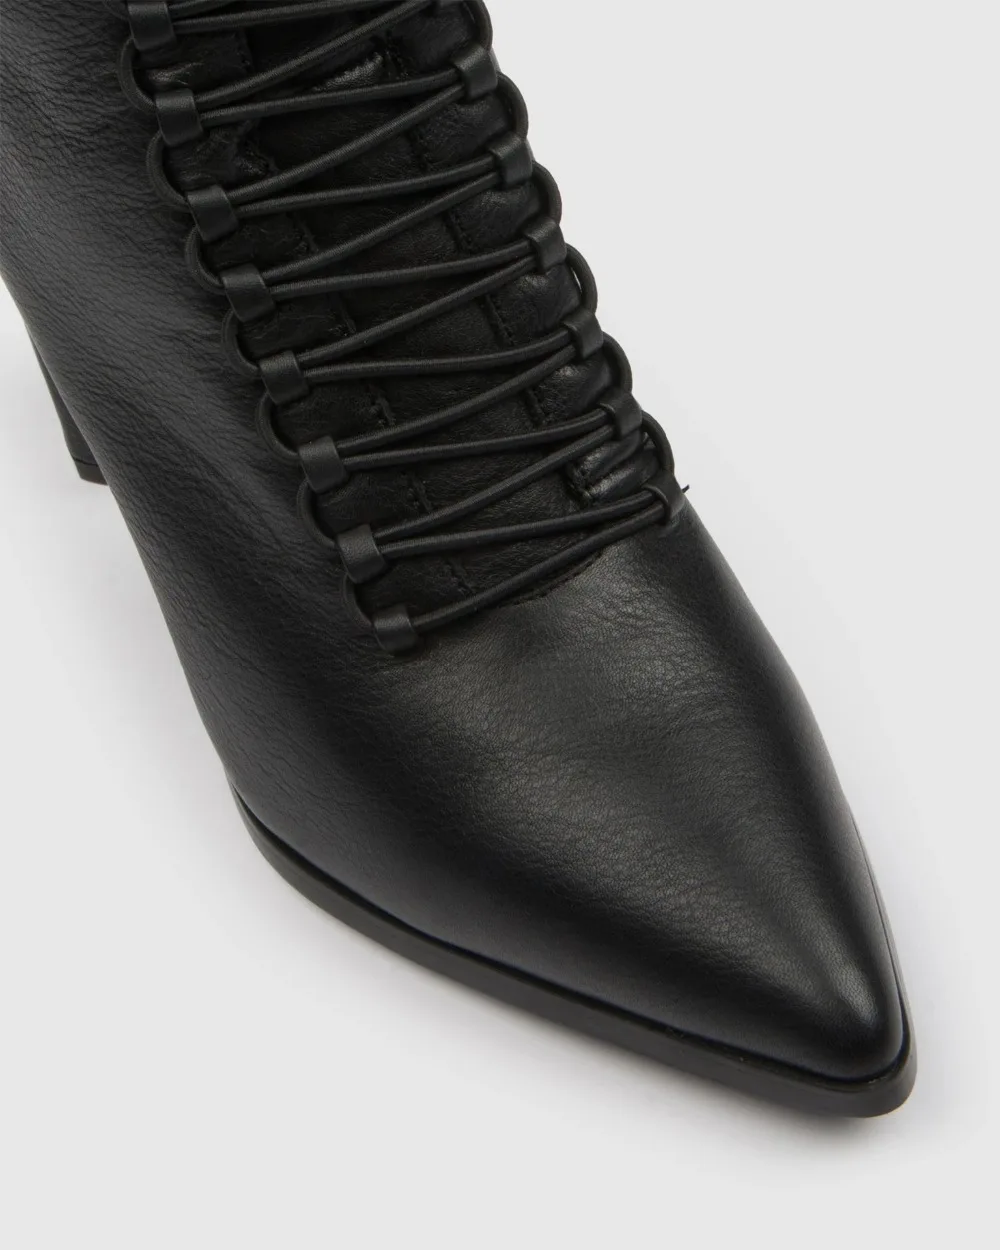 SHENGY/ г., кожаные ботинки на плоской подошве в британском стиле черные ботинки с острым носком красивые мотоботы женские ботинки